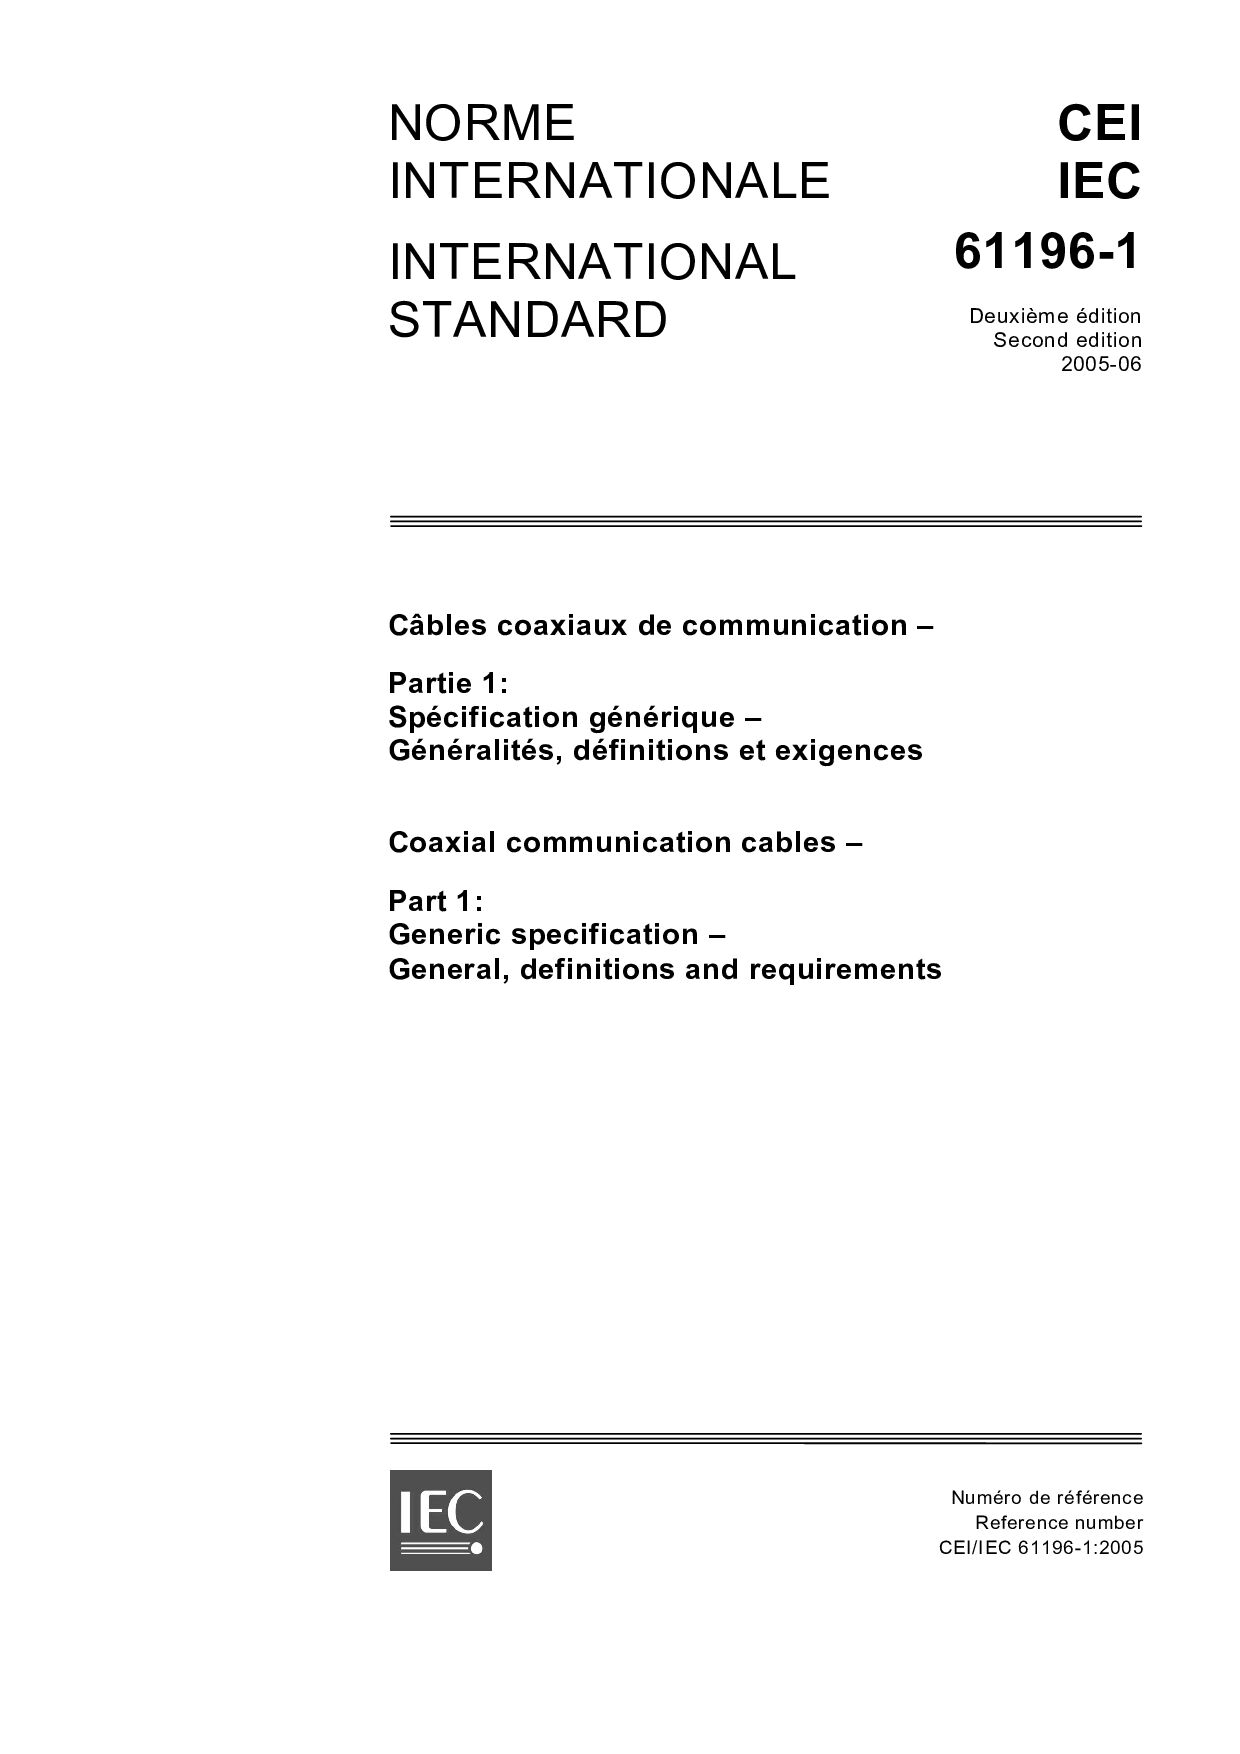 IEC 61196-1:2005